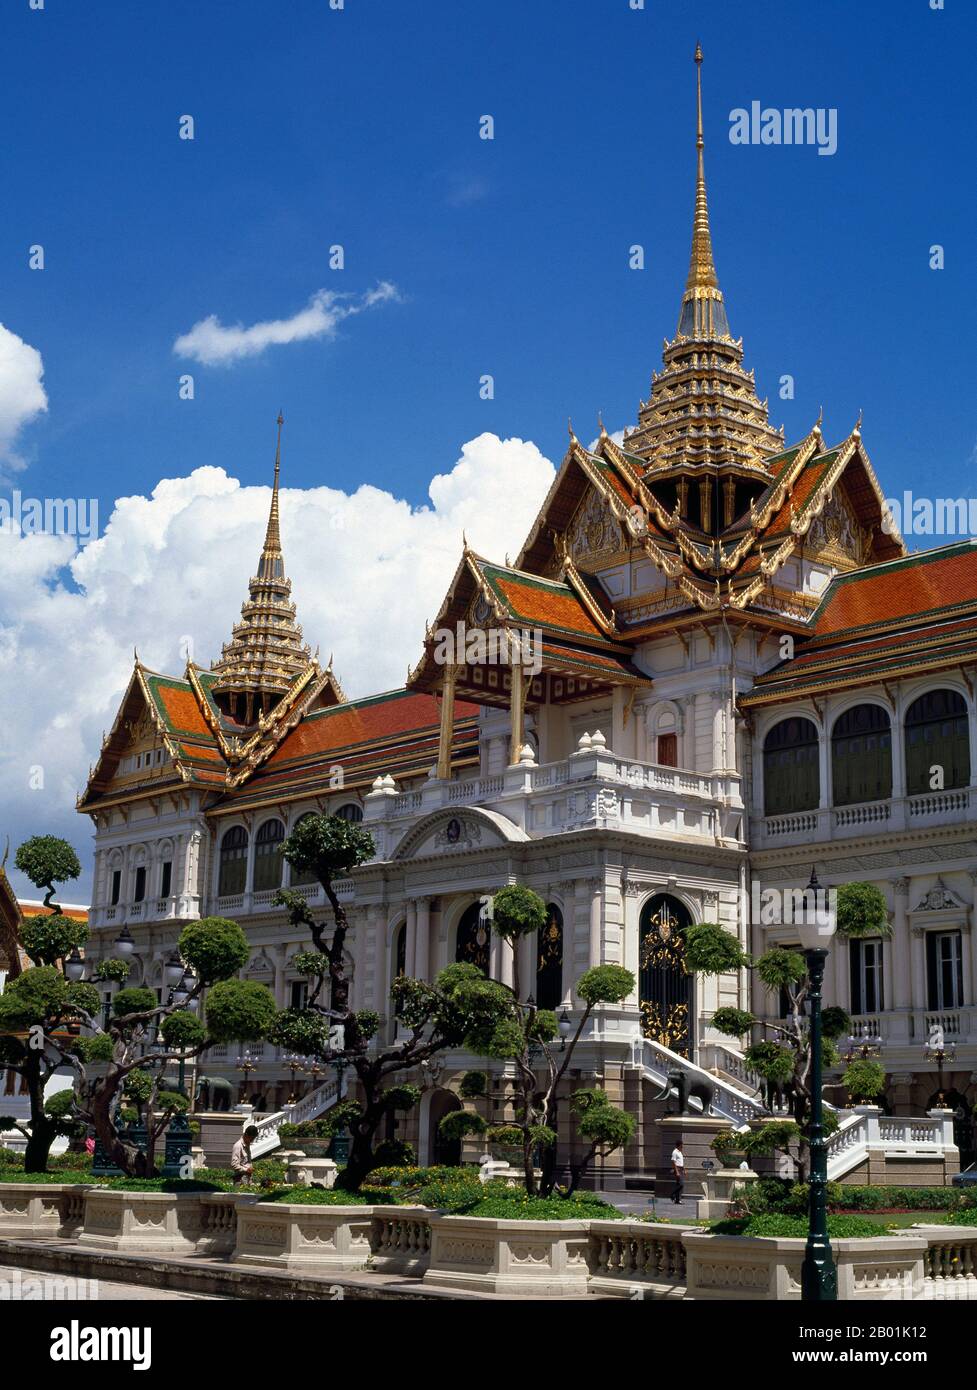 Thailand: Chakri Mahaprasad Hall, Grand Palace, Bangkok. Der große Palast diente ab dem 18. Jahrhundert als offizielle Residenz der Könige von Thailand. Der Bau des Palastes begann 1782 während der Regierungszeit von König Rama I., als er die Hauptstadt über den Fluss von Thonburi nach Bangkok verlegte. Stockfoto